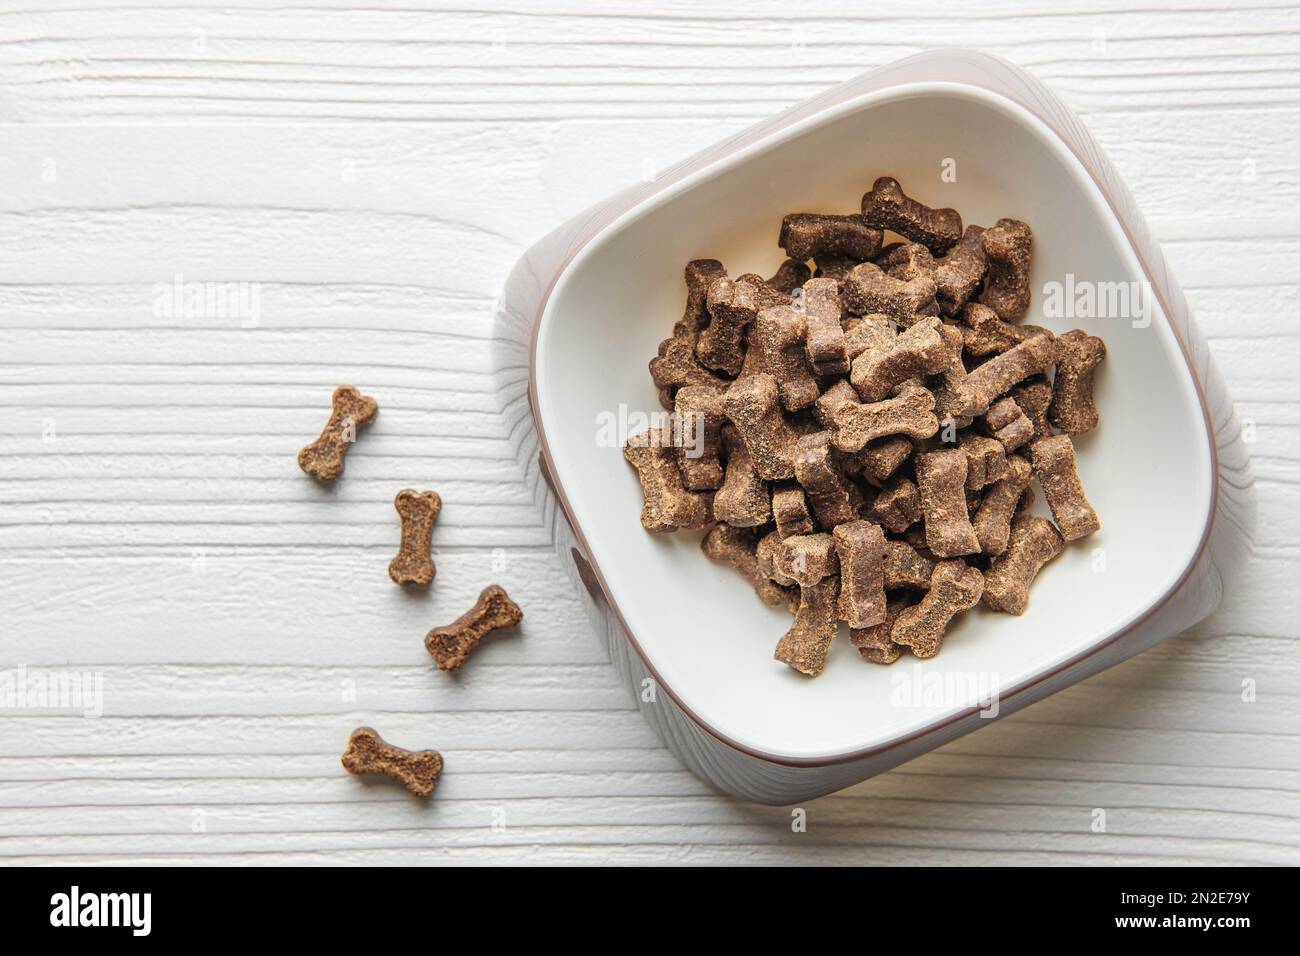 Eine Schüssel Hundefutter auf einem Holzboden. Trockenfuttergranulat in Form von Knochen. Stockfoto